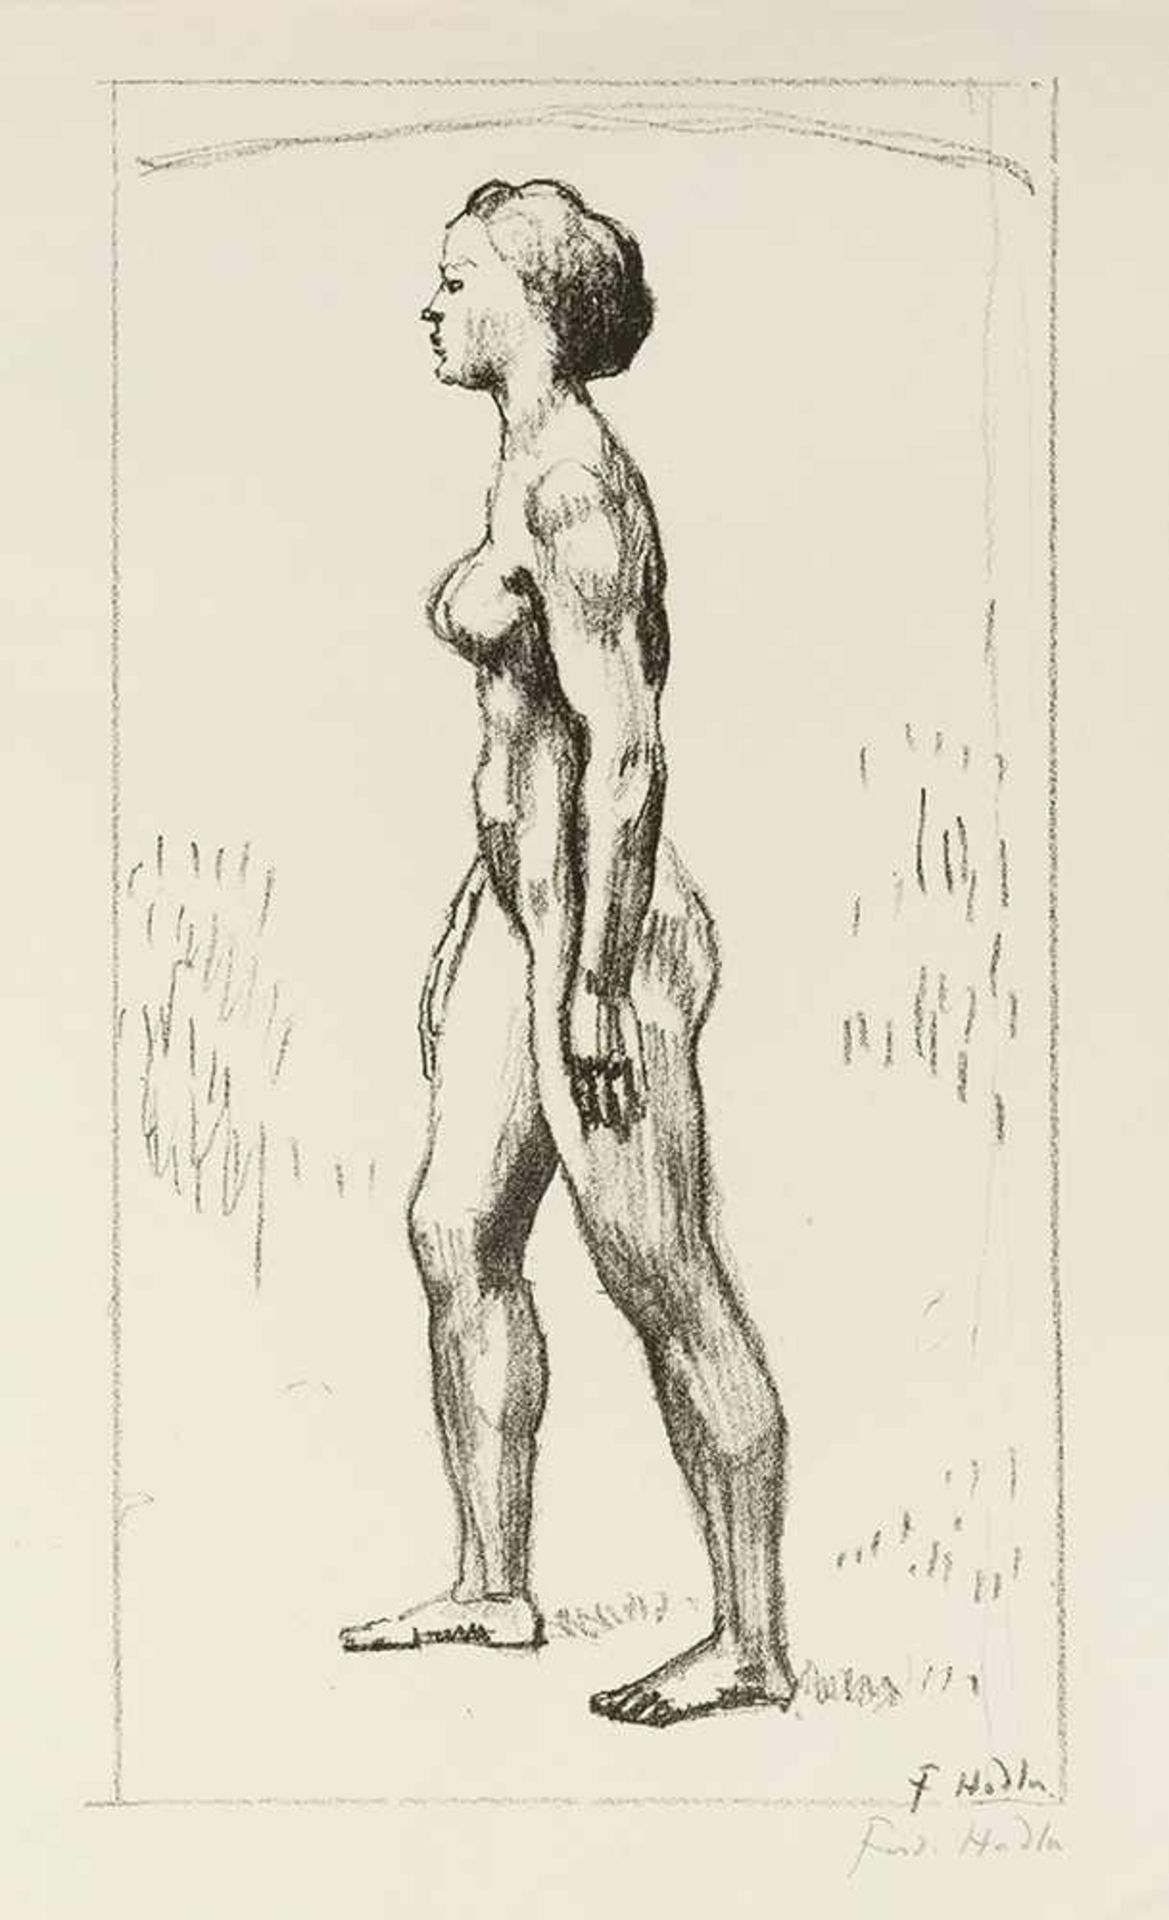 Hodler, FerdinandBern, 1853 - Geneva, 191847,5 x 26cm,o.R.Stehender weiblicher Akt. Lithografie